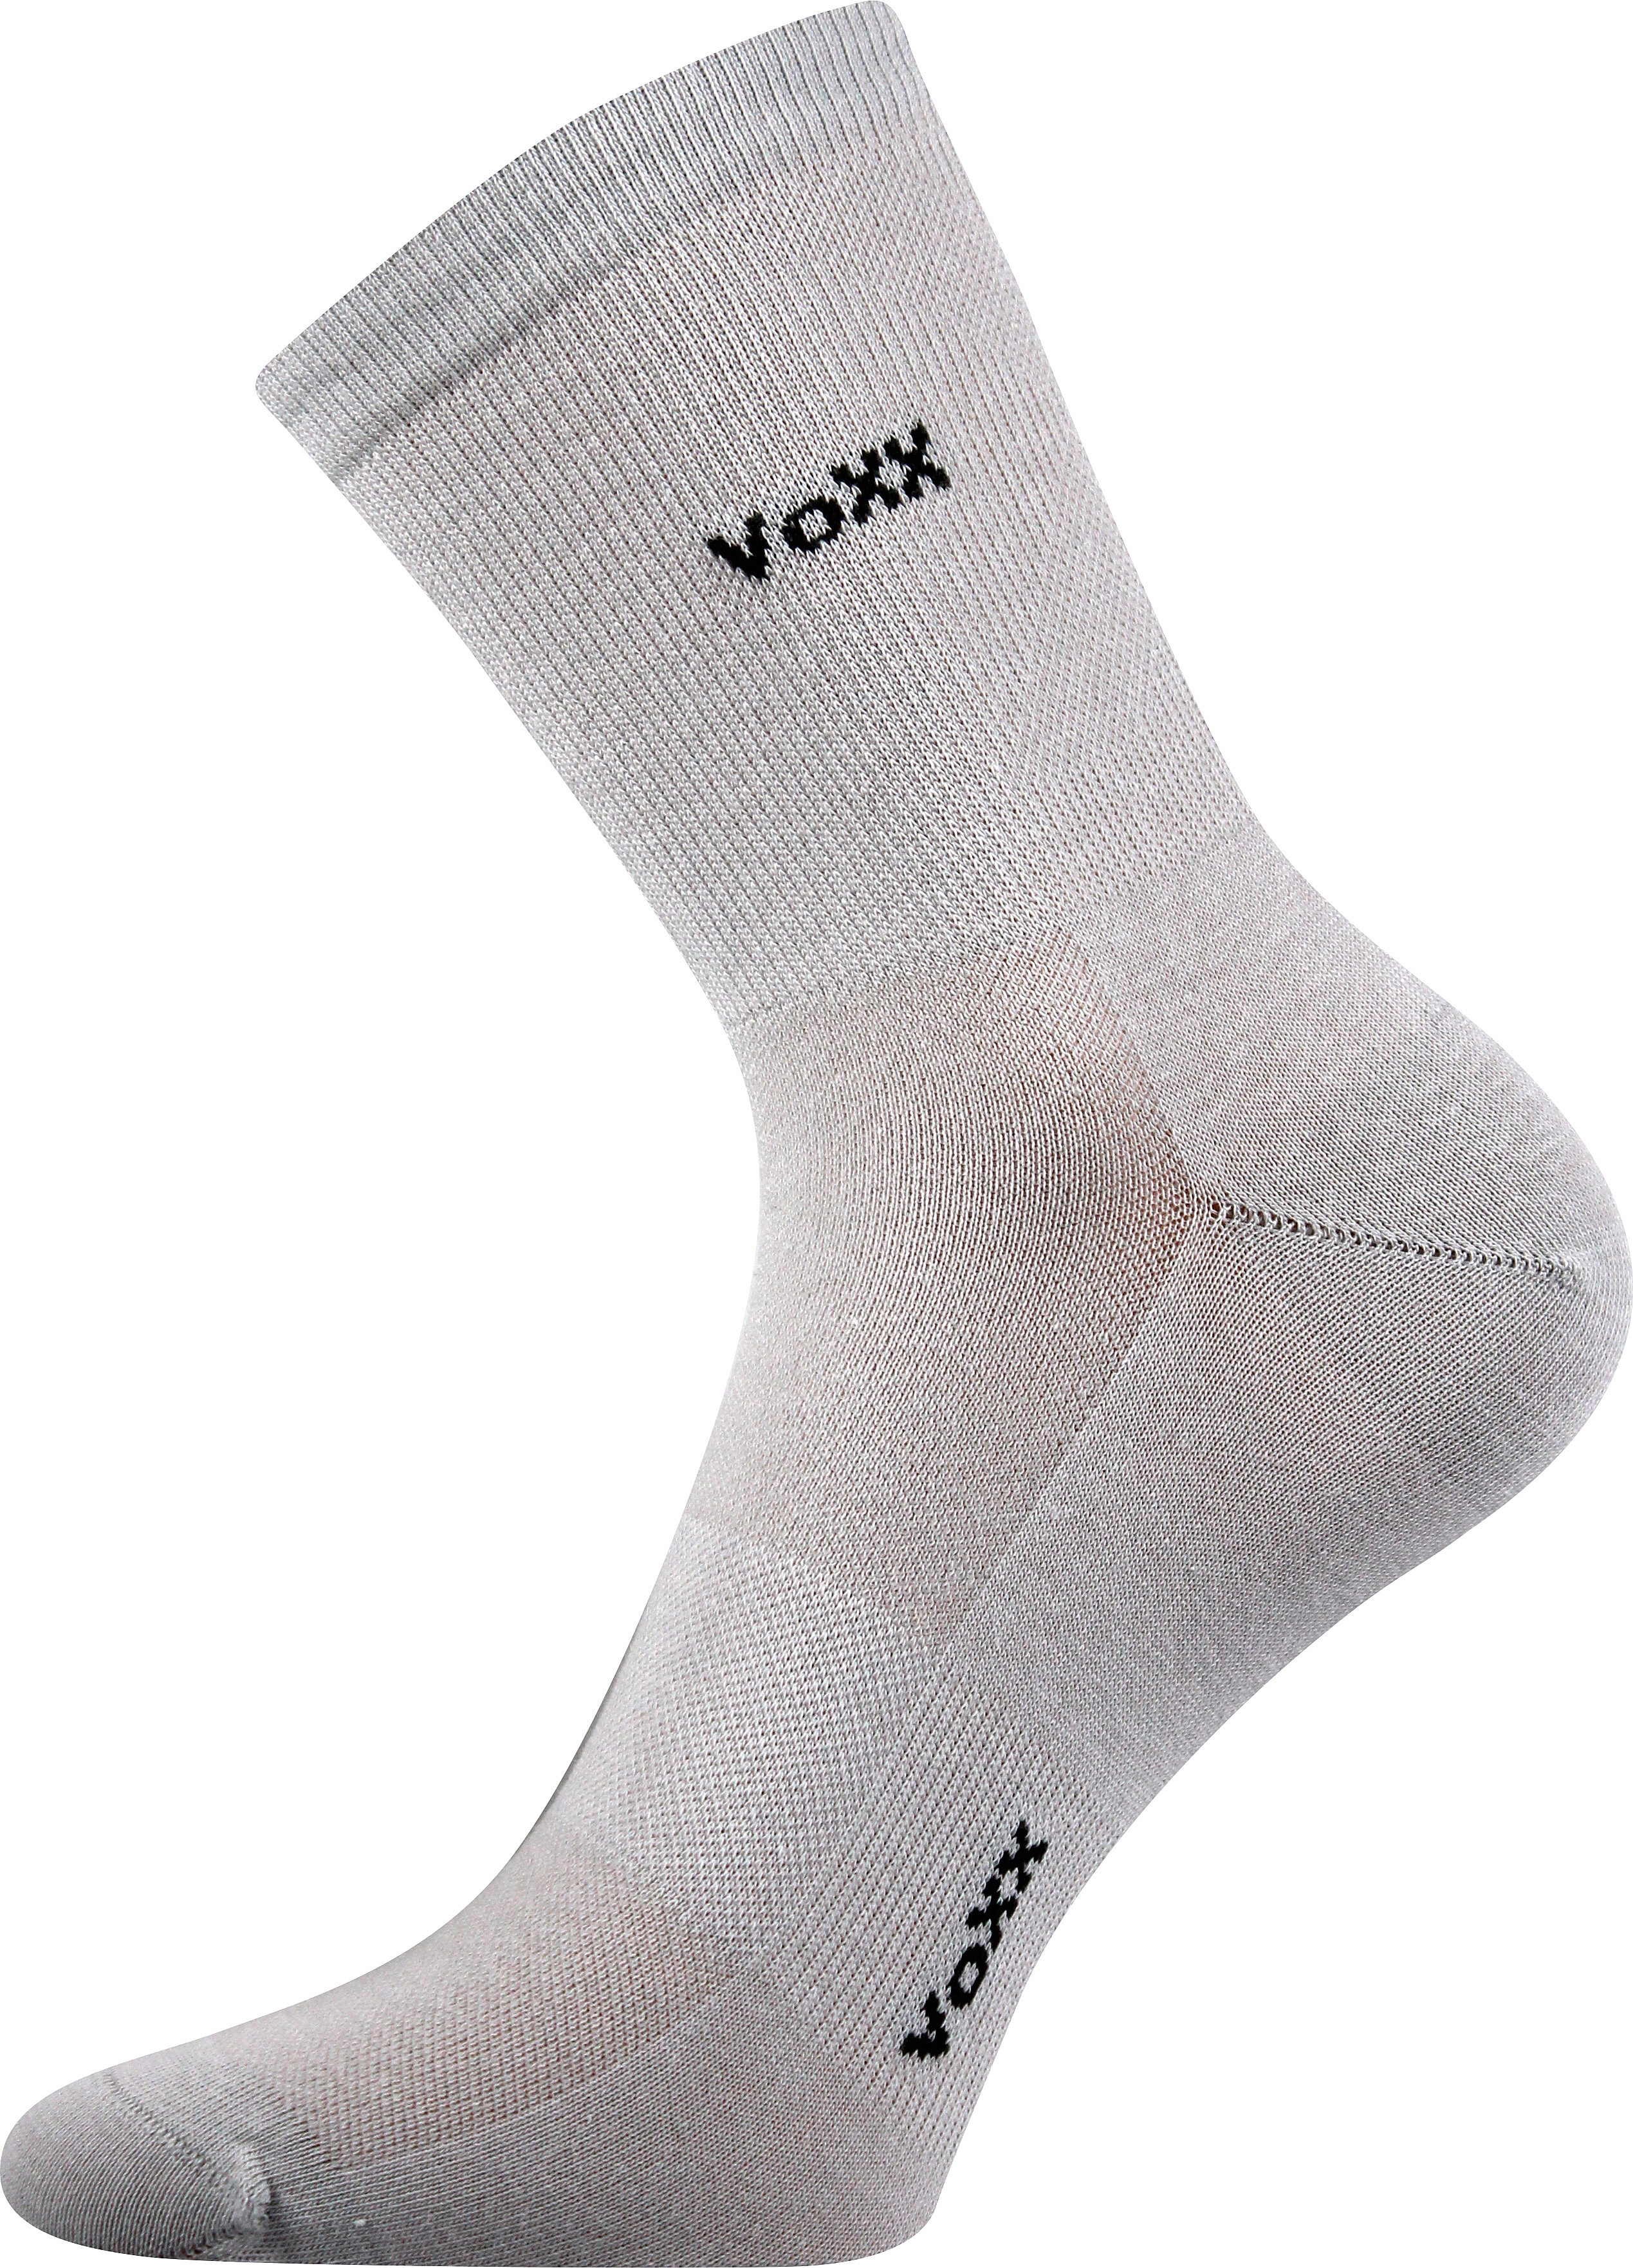 Ponožky sportovní Voxx Horizon - světle šedé, 35-38